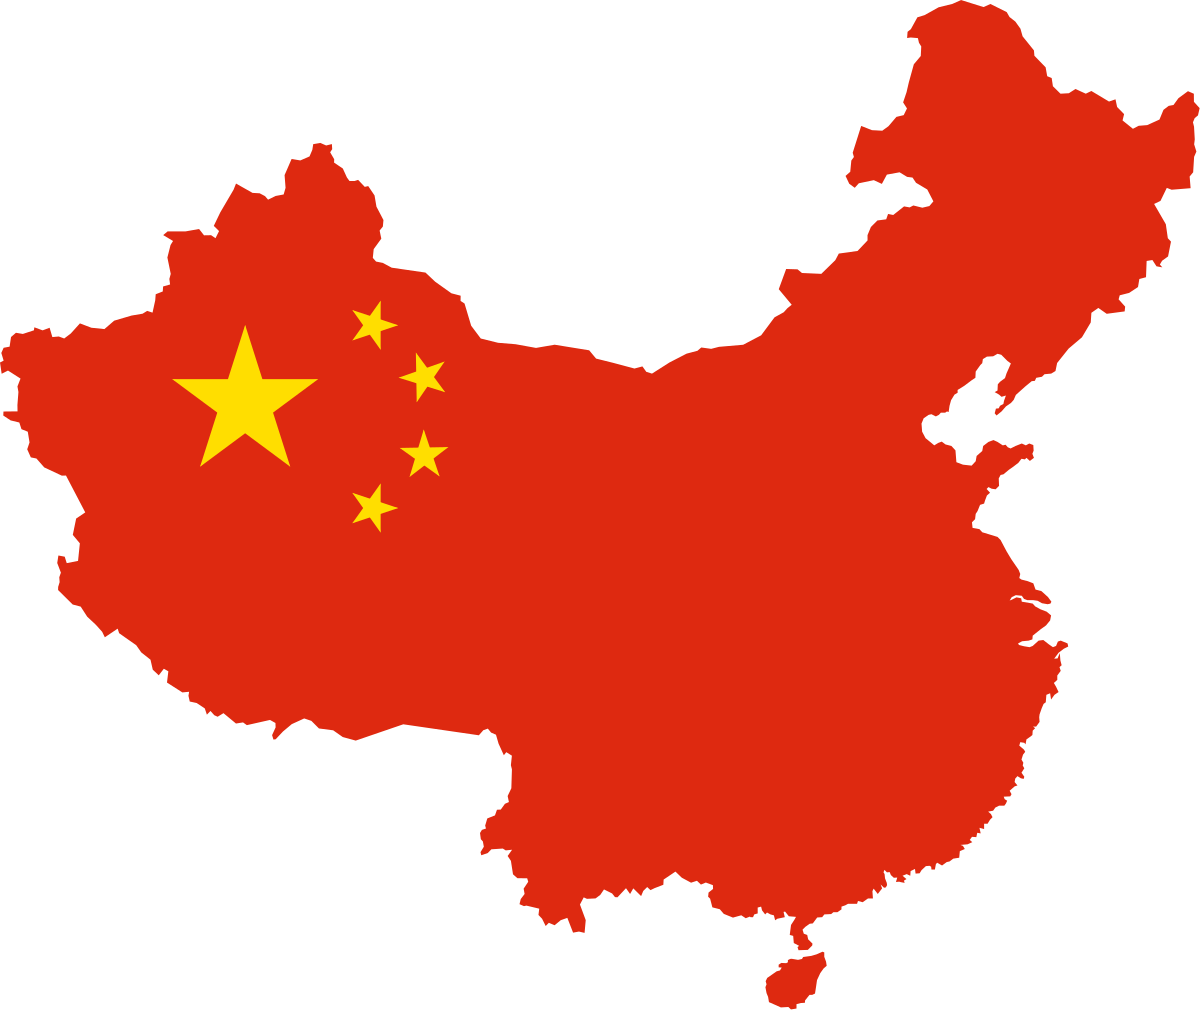 चीनको जिडिपी ५ दशमलव ४ प्रतिशतले वृद्धि हुने अनुमान